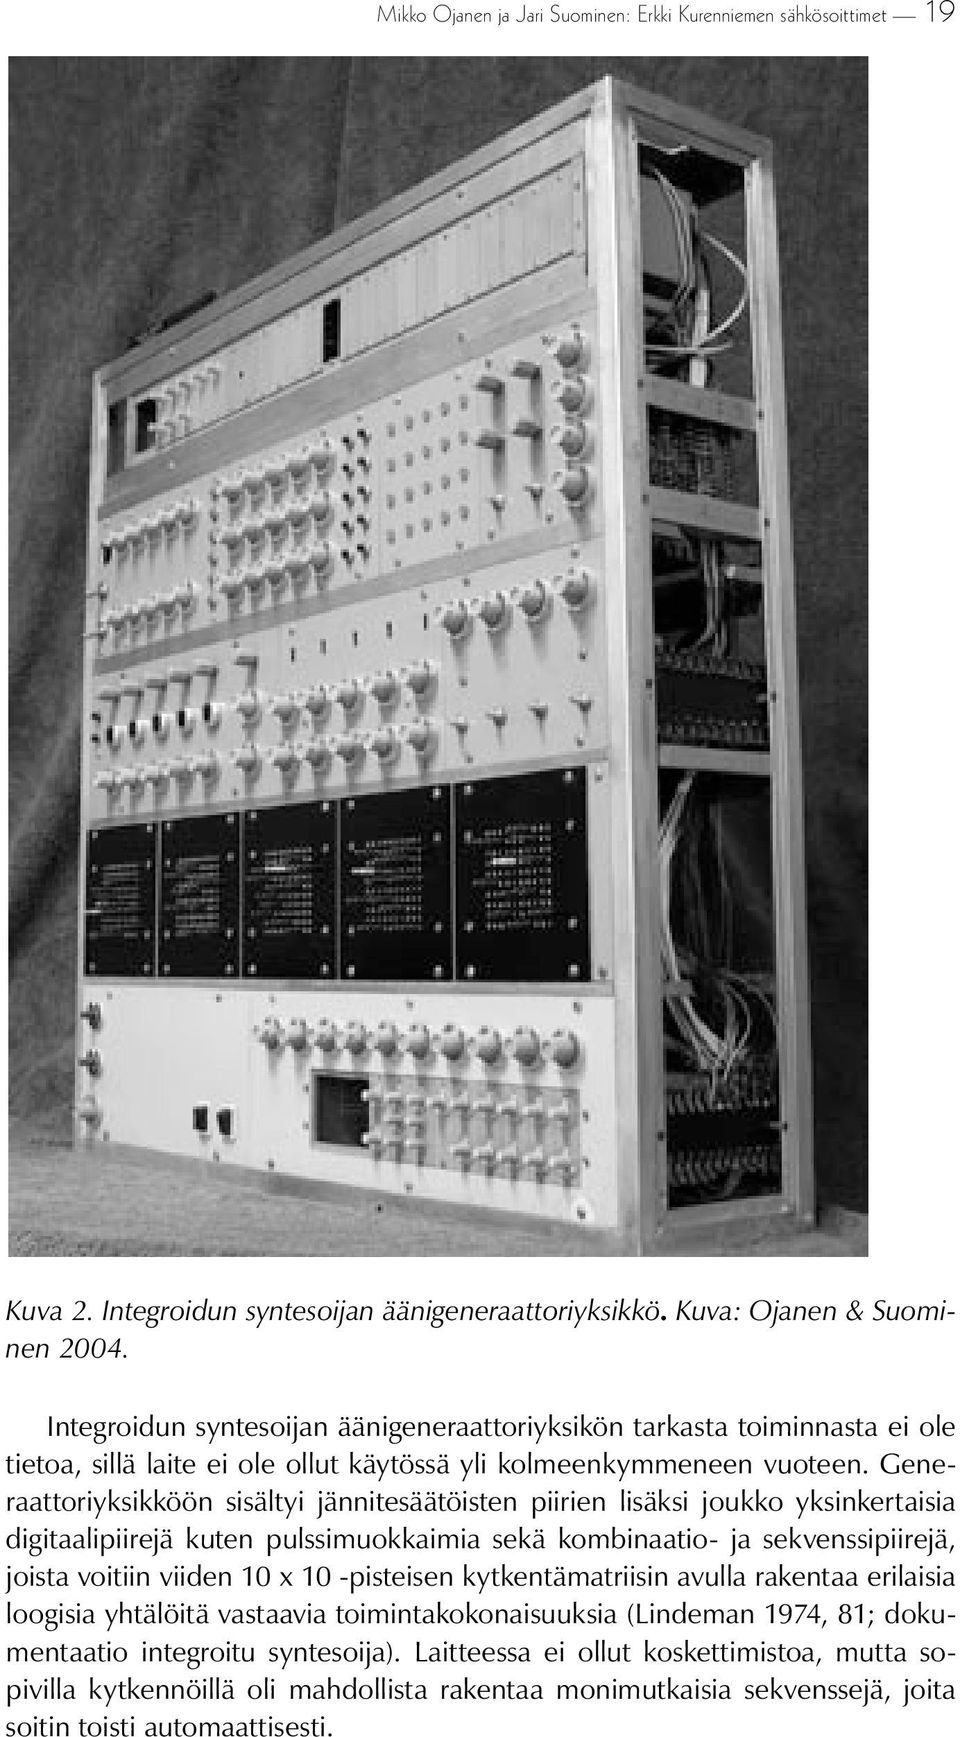 Generaattoriyksikköön sisältyi jännitesäätöisten piirien lisäksi joukko yksinkertaisia digitaalipiirejä kuten pulssimuokkaimia sekä kombinaatio- ja sekvenssipiirejä, joista voitiin viiden 10 x 10